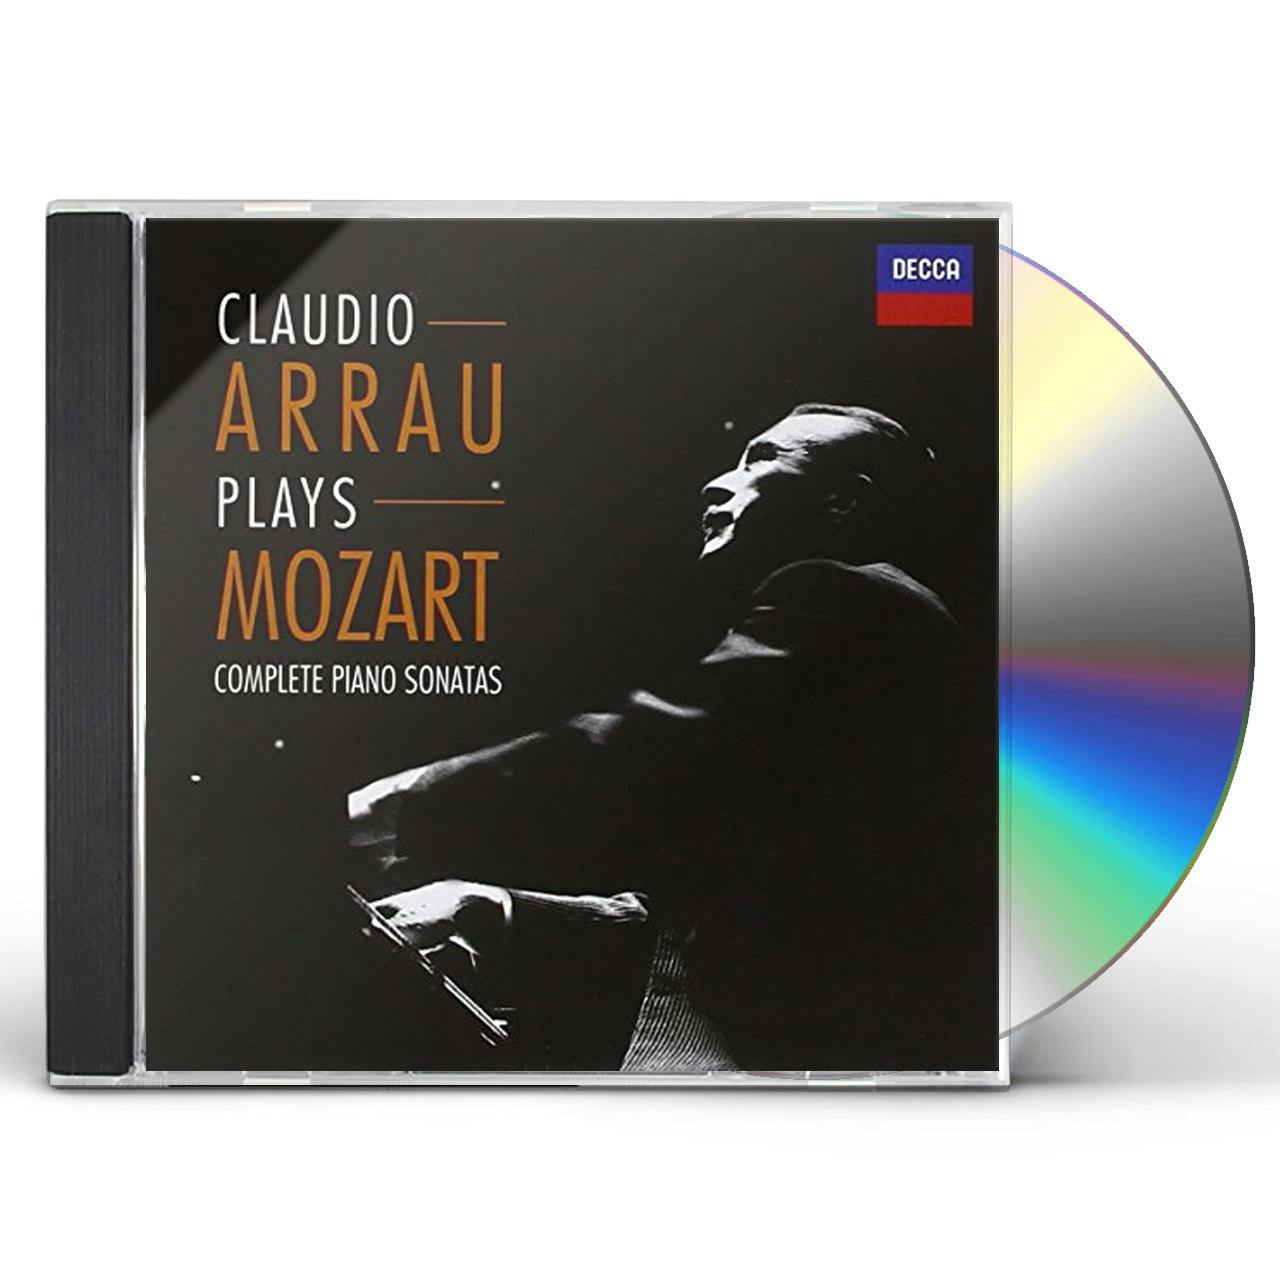 CD　COMPLETE　PIANO　SONATAS　(MOZART)　Claudio　Arrau